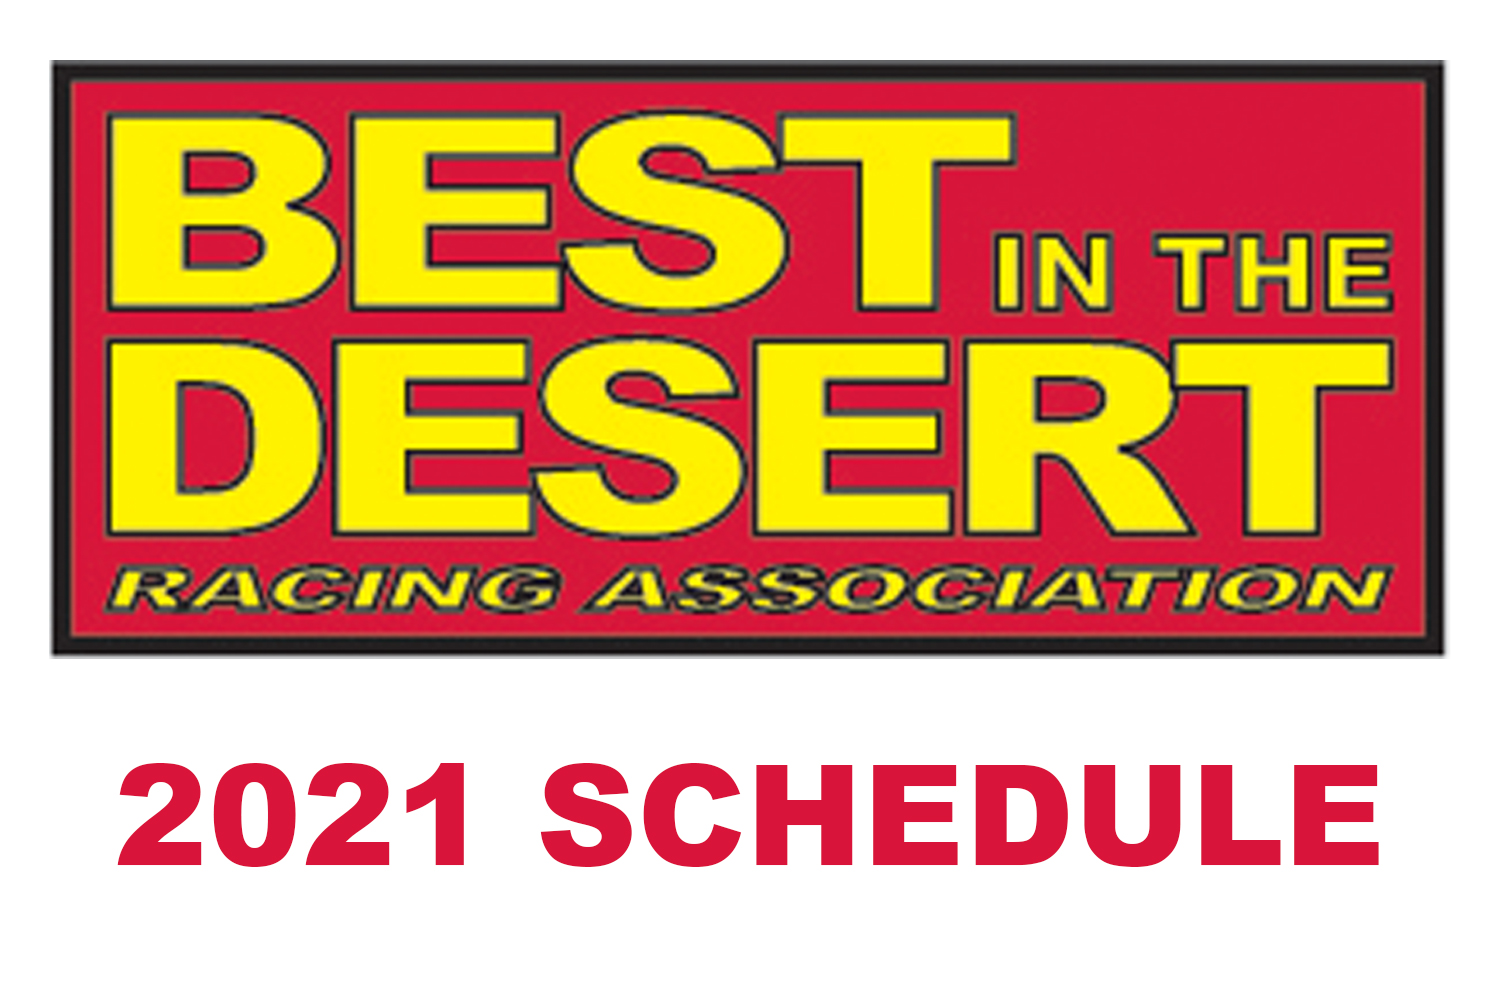 Vegas Desrt Stinger Tournament Schedule 2022 - Tournament Table 2023